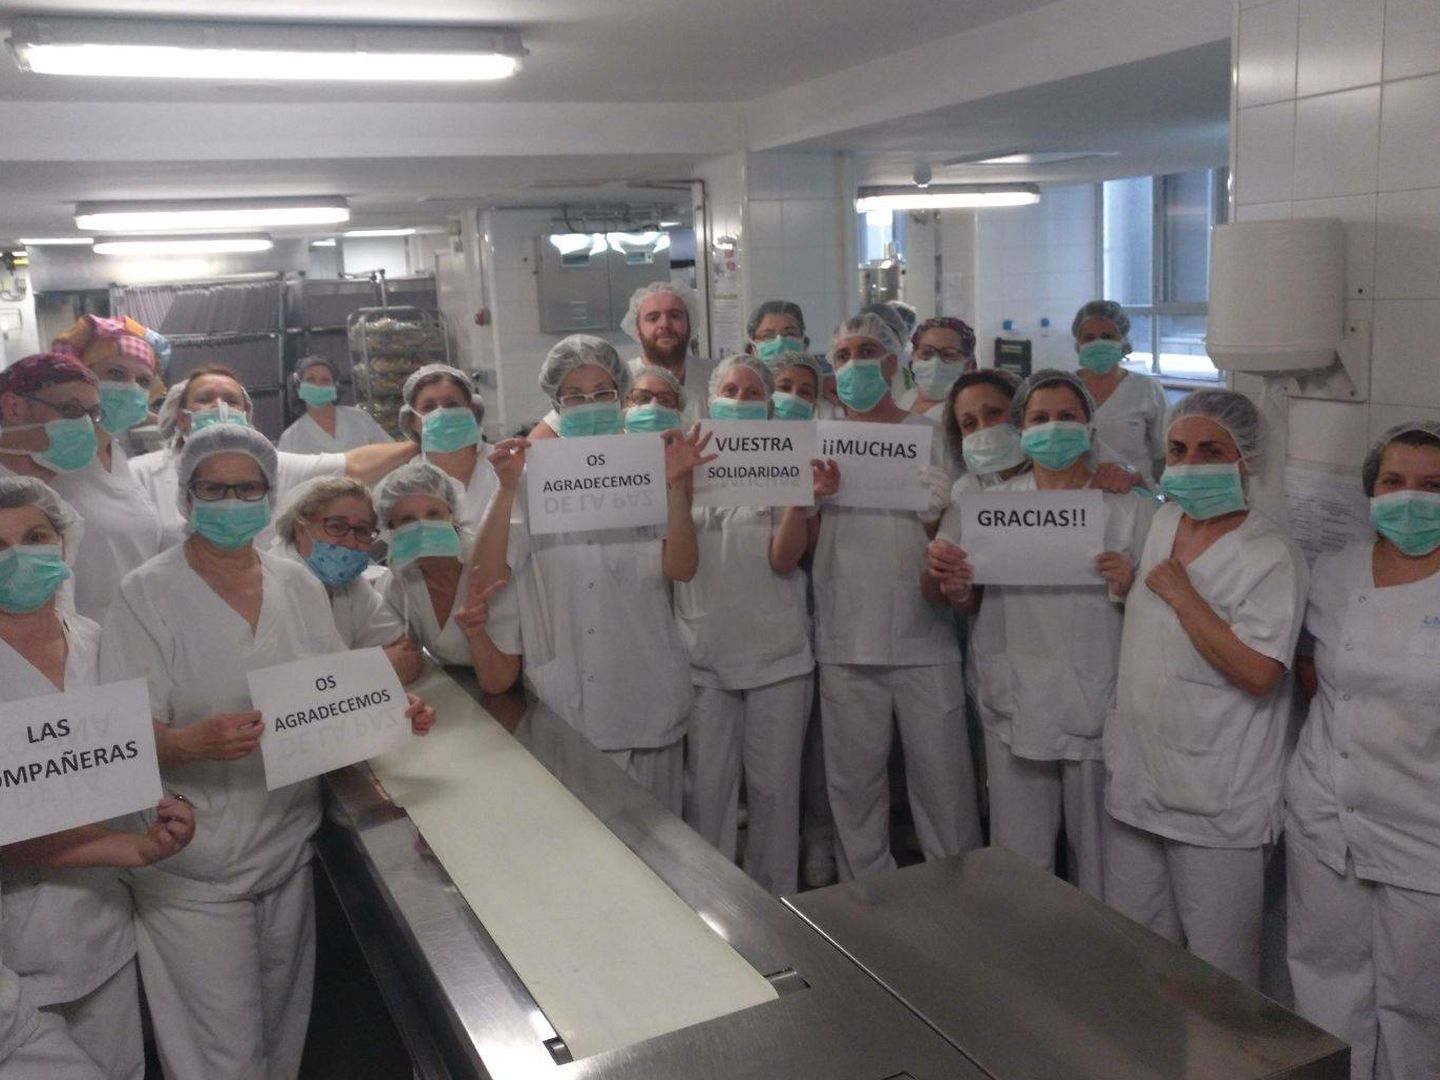 Los actuales trabajadores de la cocina de La Paz, dando las gracias al resto de hospitales que se han solidarizado con ellos.